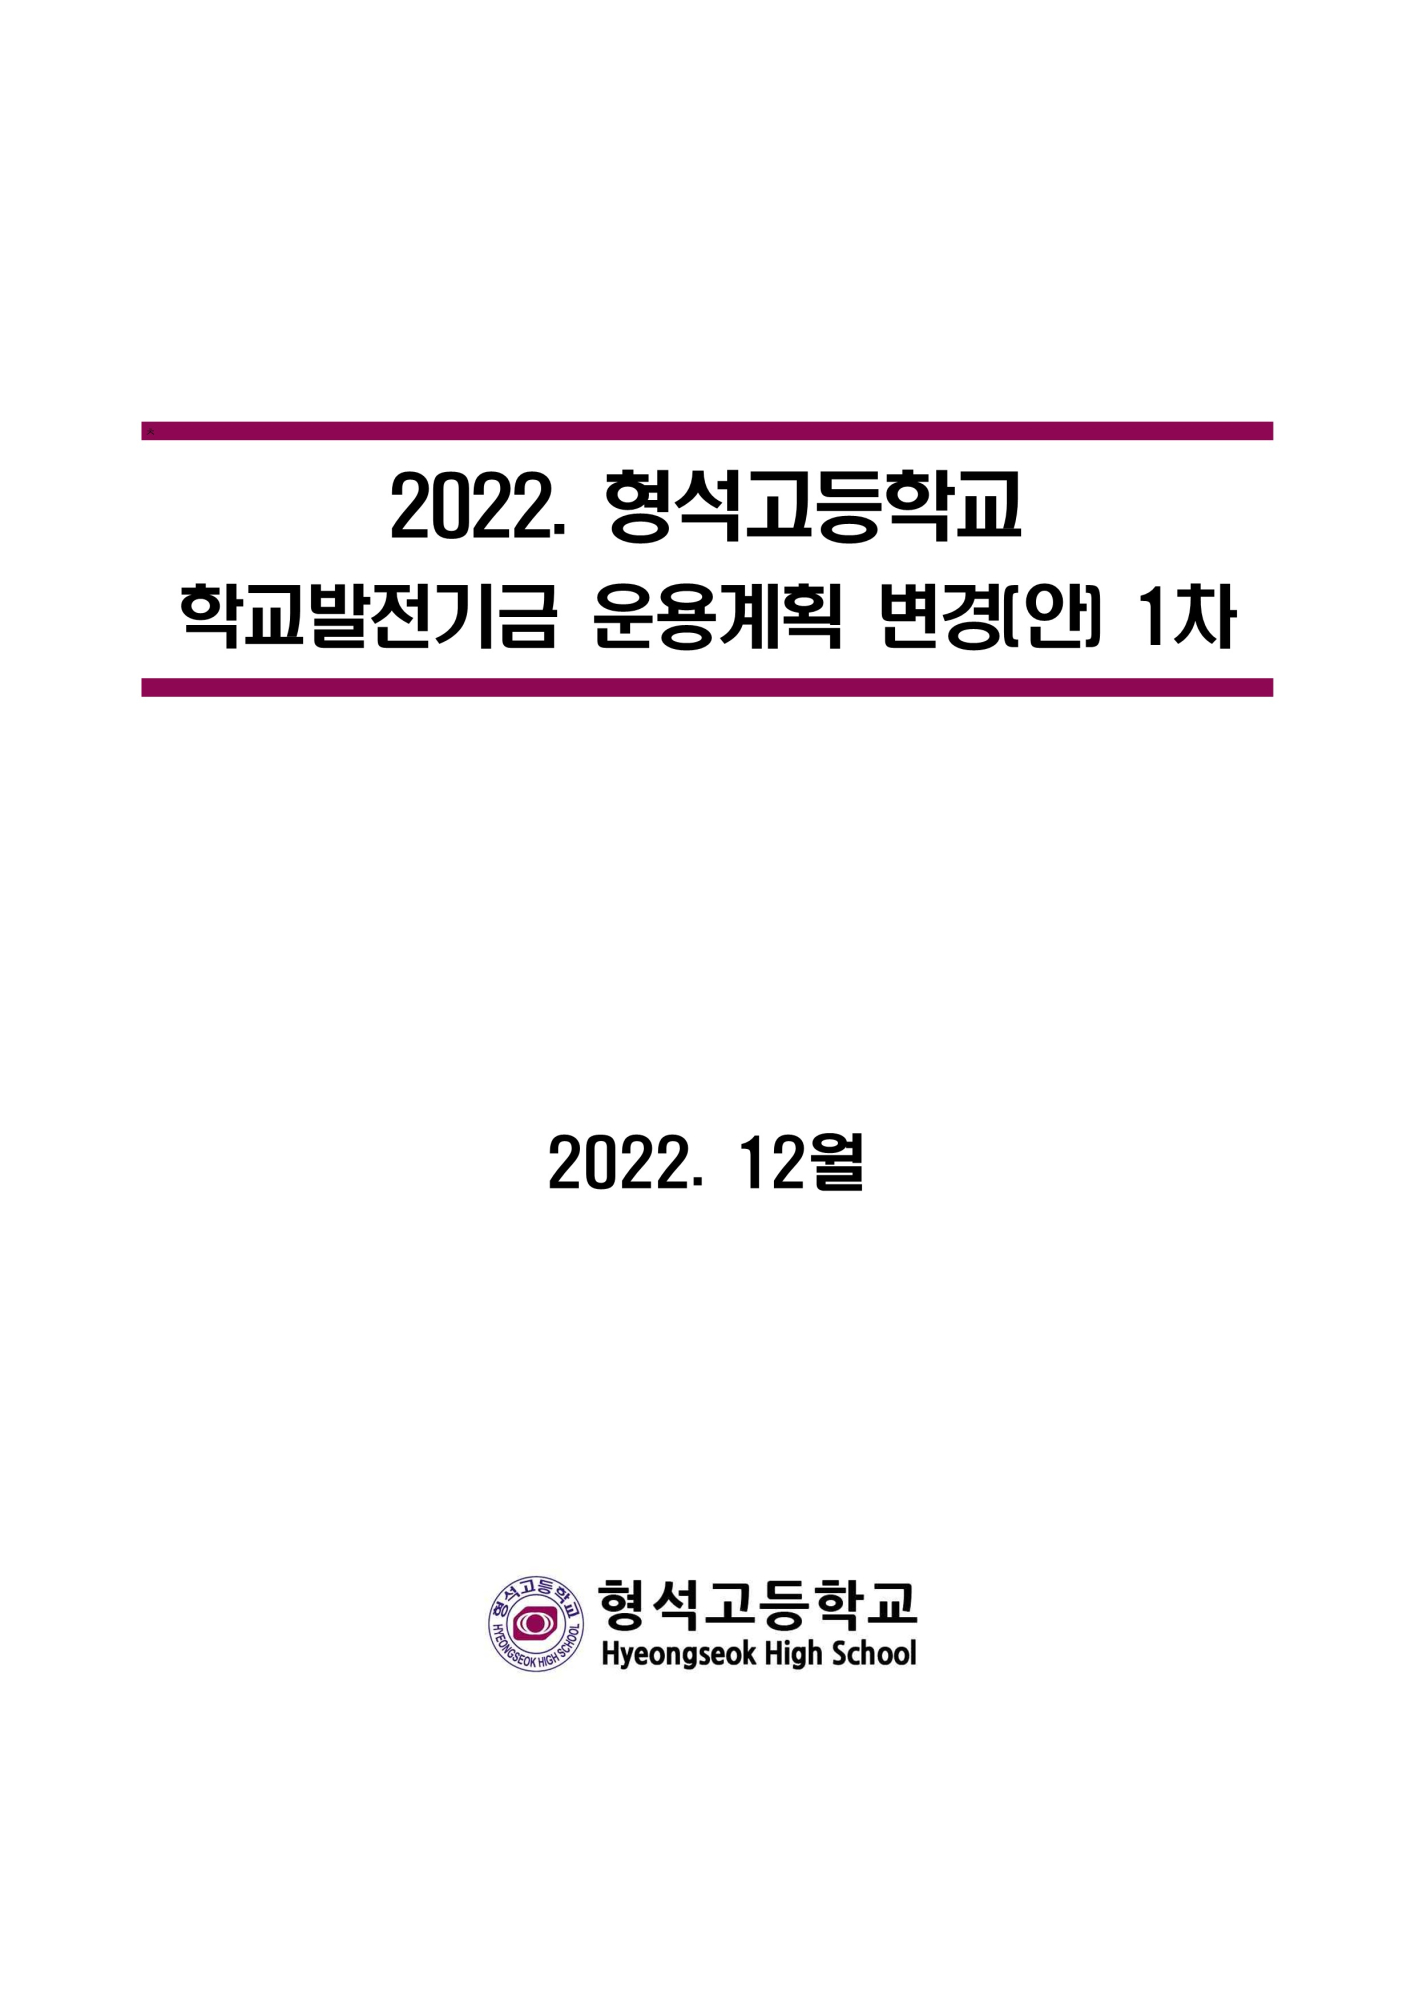 [형석고] 2022. 학교발전기금운용계획-1차-홈페이지_1